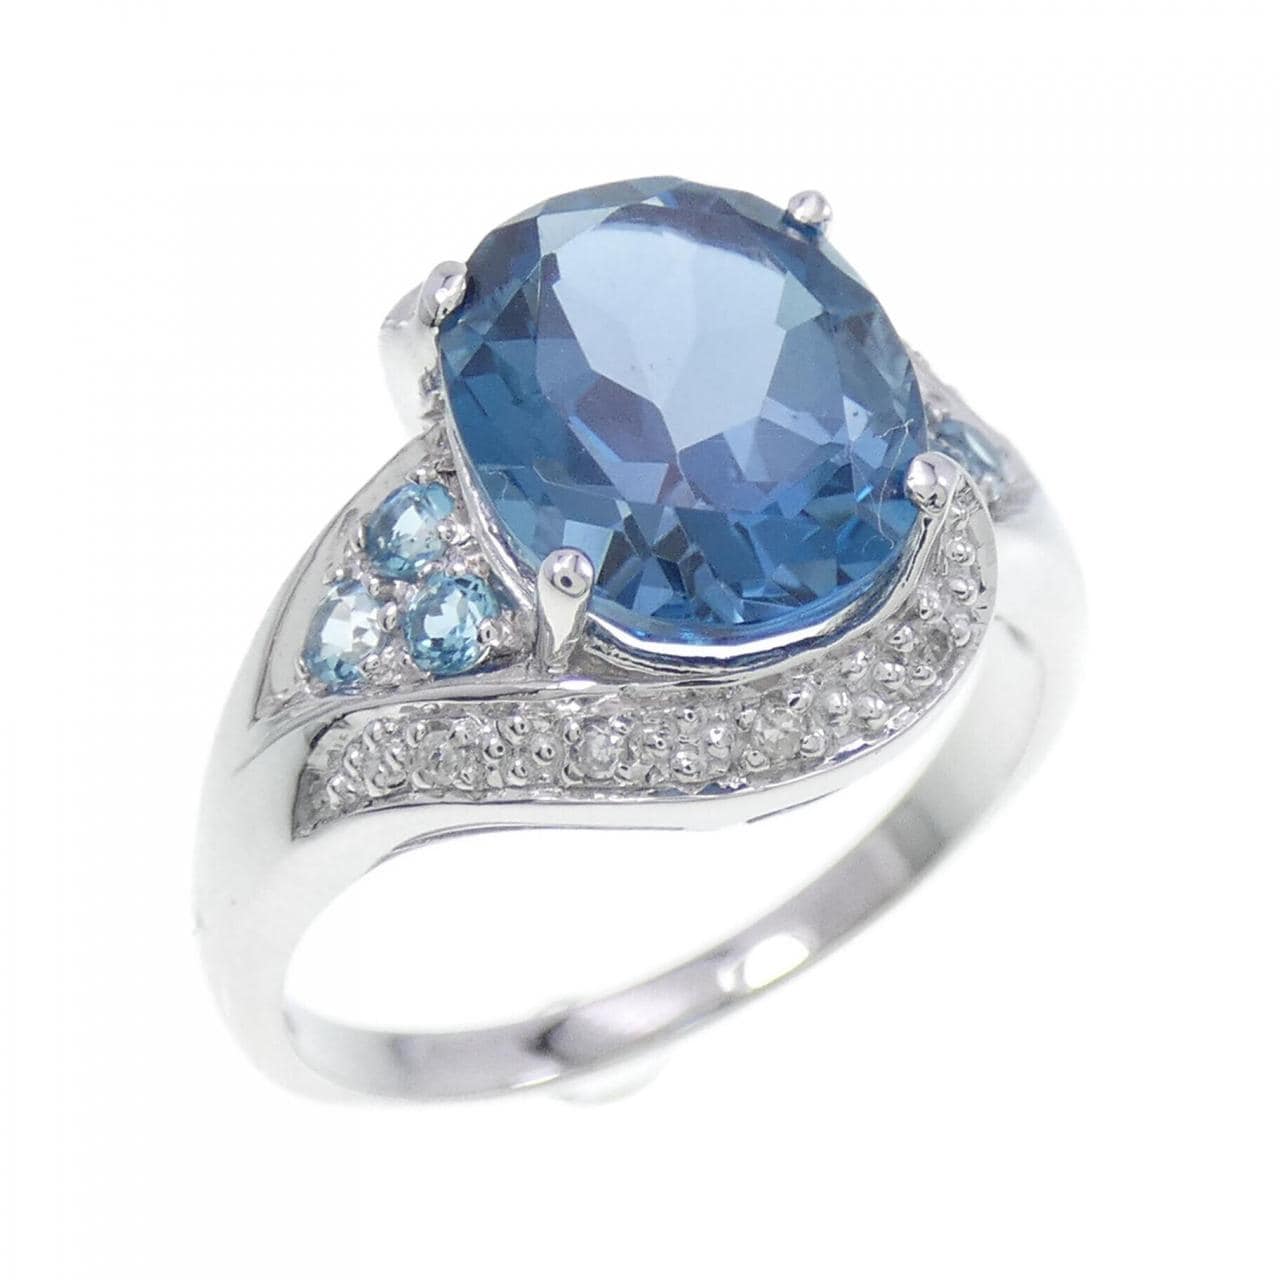 K14WG blue Topaz ring